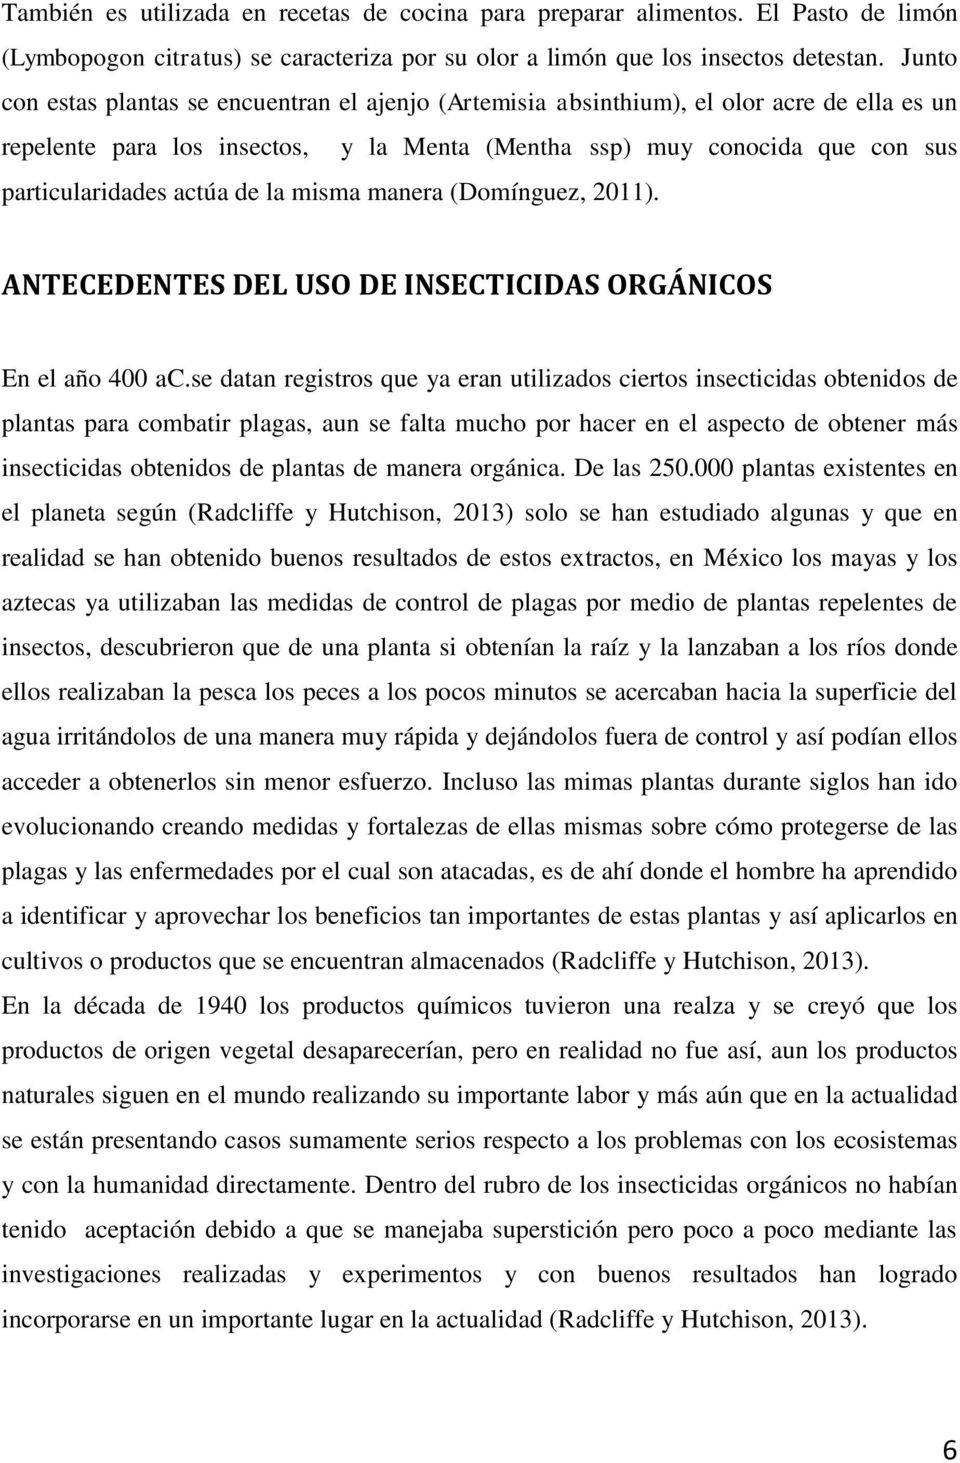 de la misma manera (Domínguez, 2011). ANTECEDENTES DEL USO DE INSECTICIDAS ORGÁNICOS En el año 400 ac.